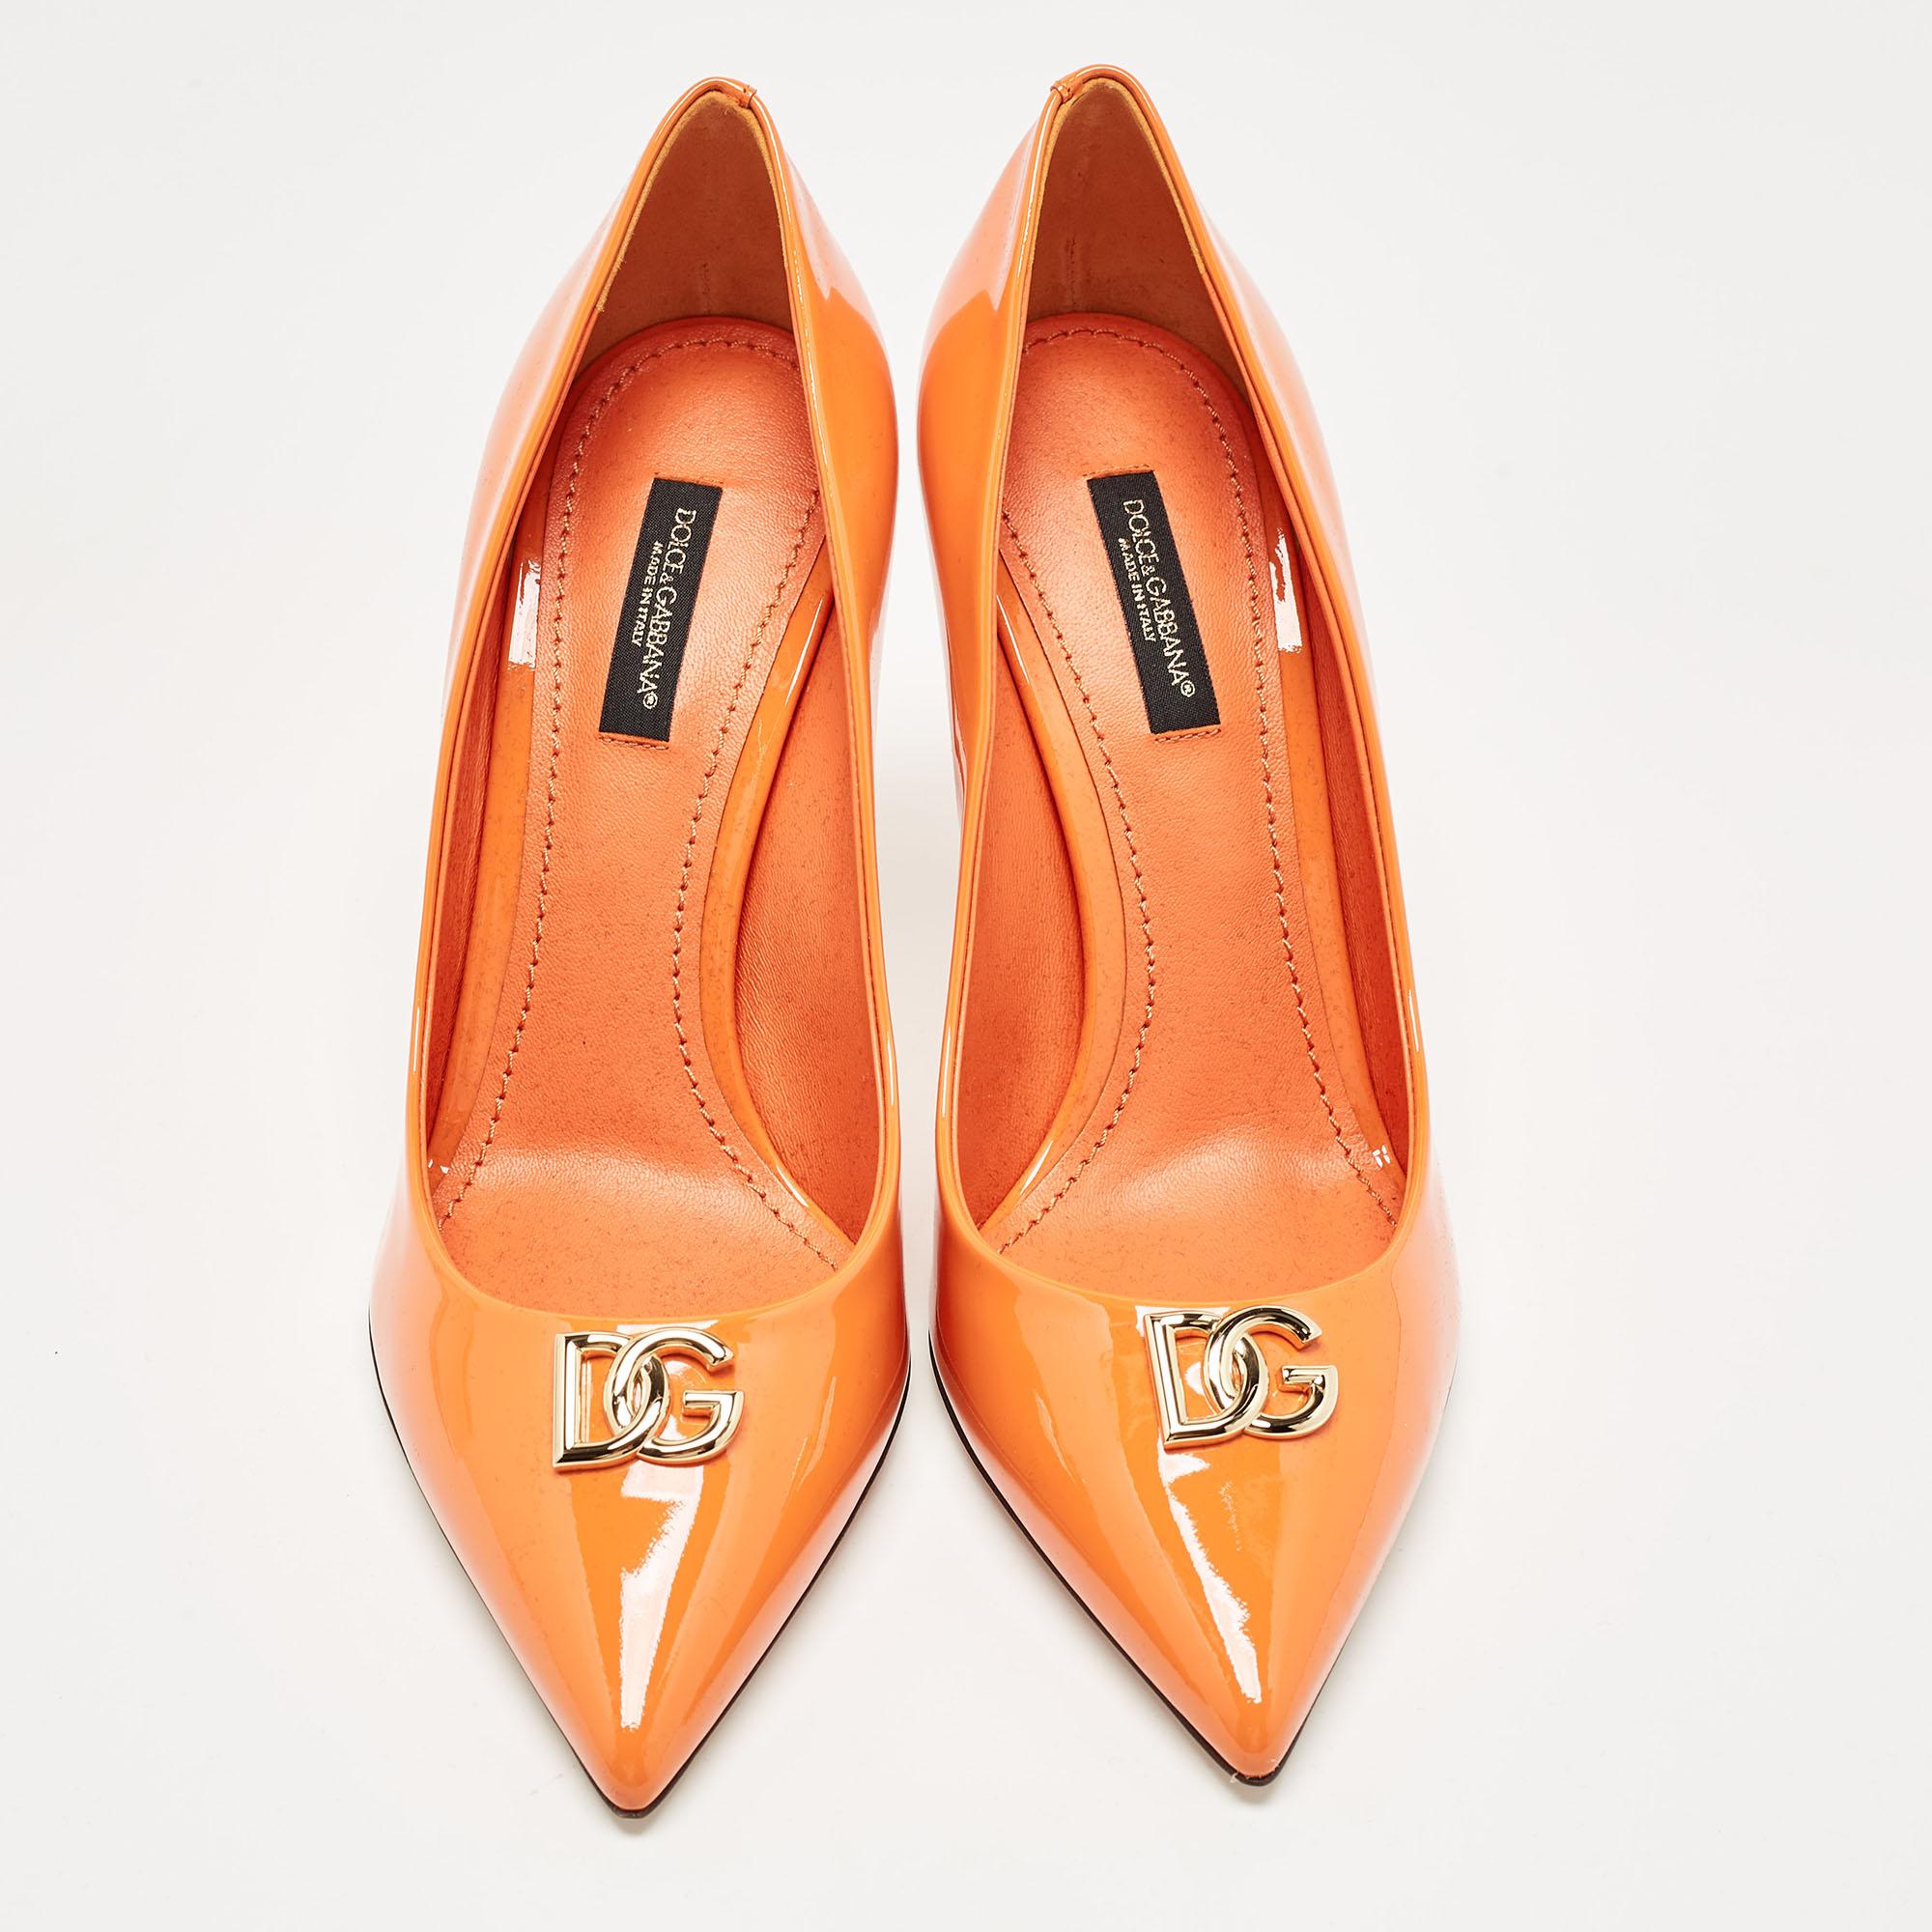 Die Tradition des Modehauses, gepaart mit modernem Design, macht diese orangefarbenen Pumps von Dolce & Gabbana zu einer fabelhaften Wahl. Sie helfen Ihnen, mit Leichtigkeit ein schickes Aussehen zu erzielen.

Enthält: Original-Staubbeutel

